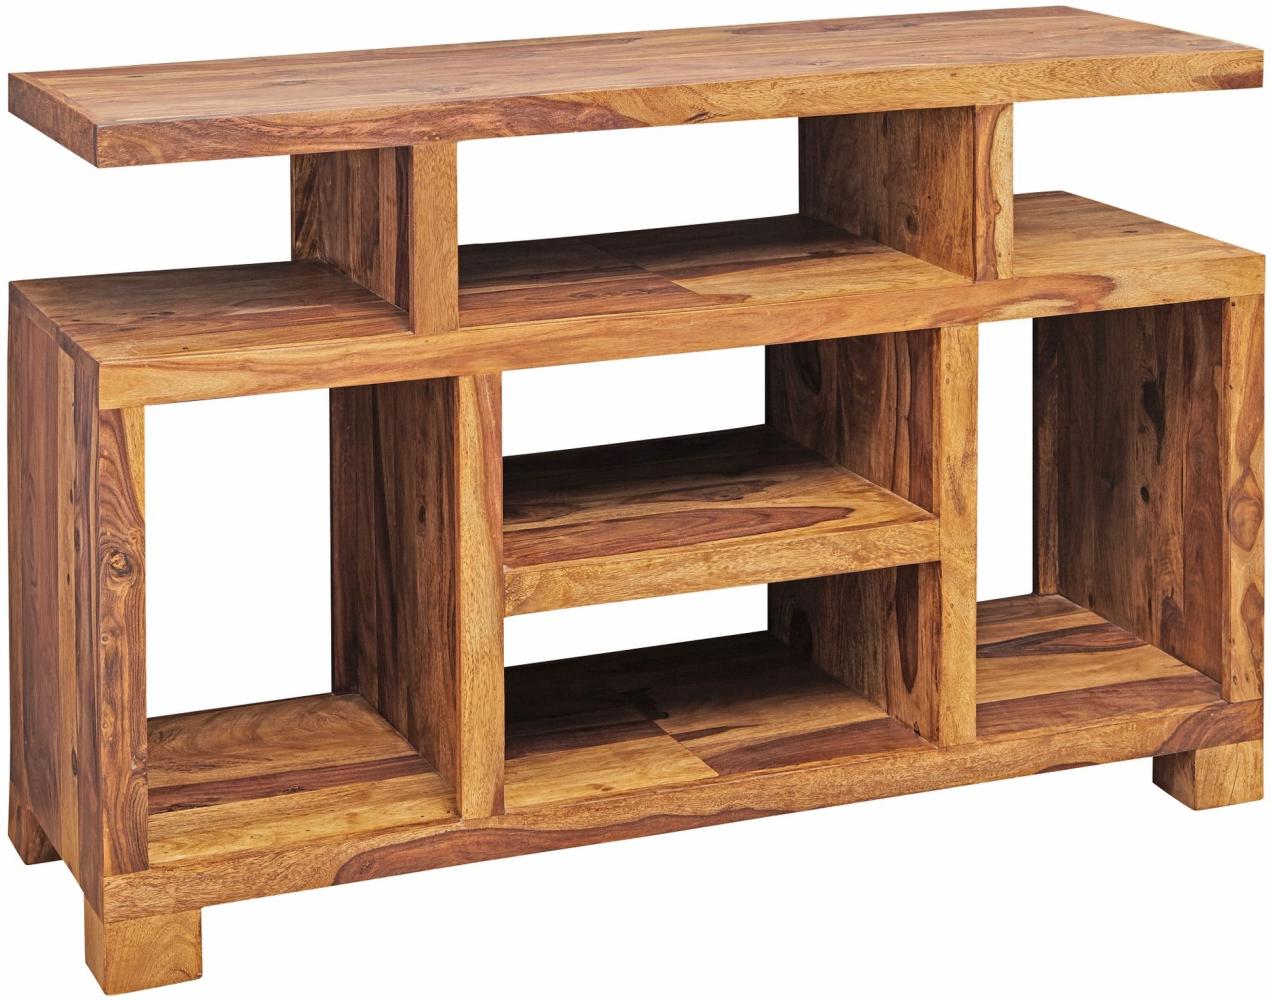 KADIMA DESIGN Sheesham-Holz Sideboard im Landhausstil, 115x76x40 cm, Multifunktionale TV-Kommode mit Praktischem Stauraum. Bild 1